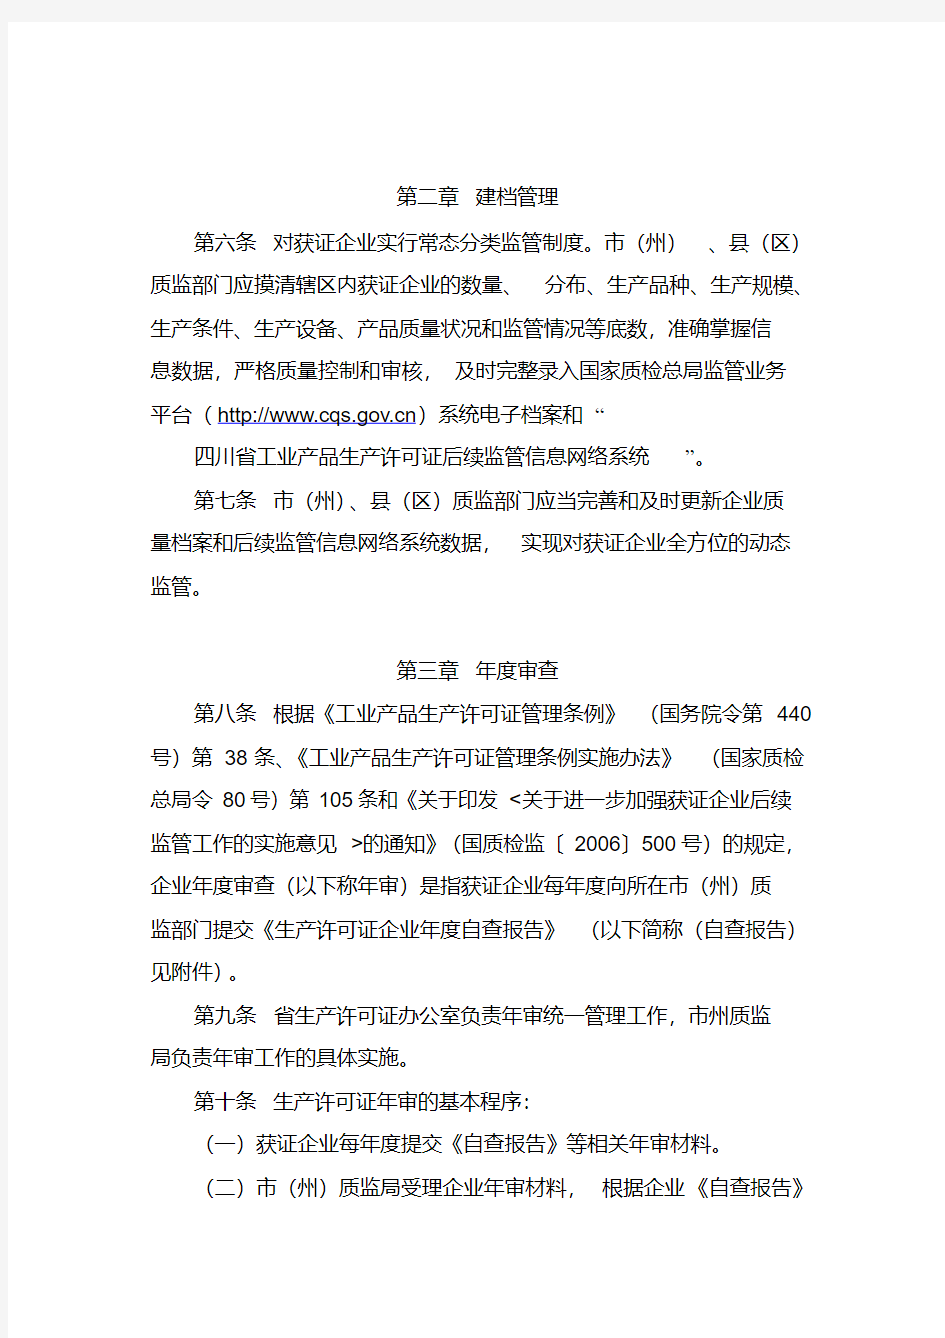 四川省工业产品生产许可证证后监督管理办法